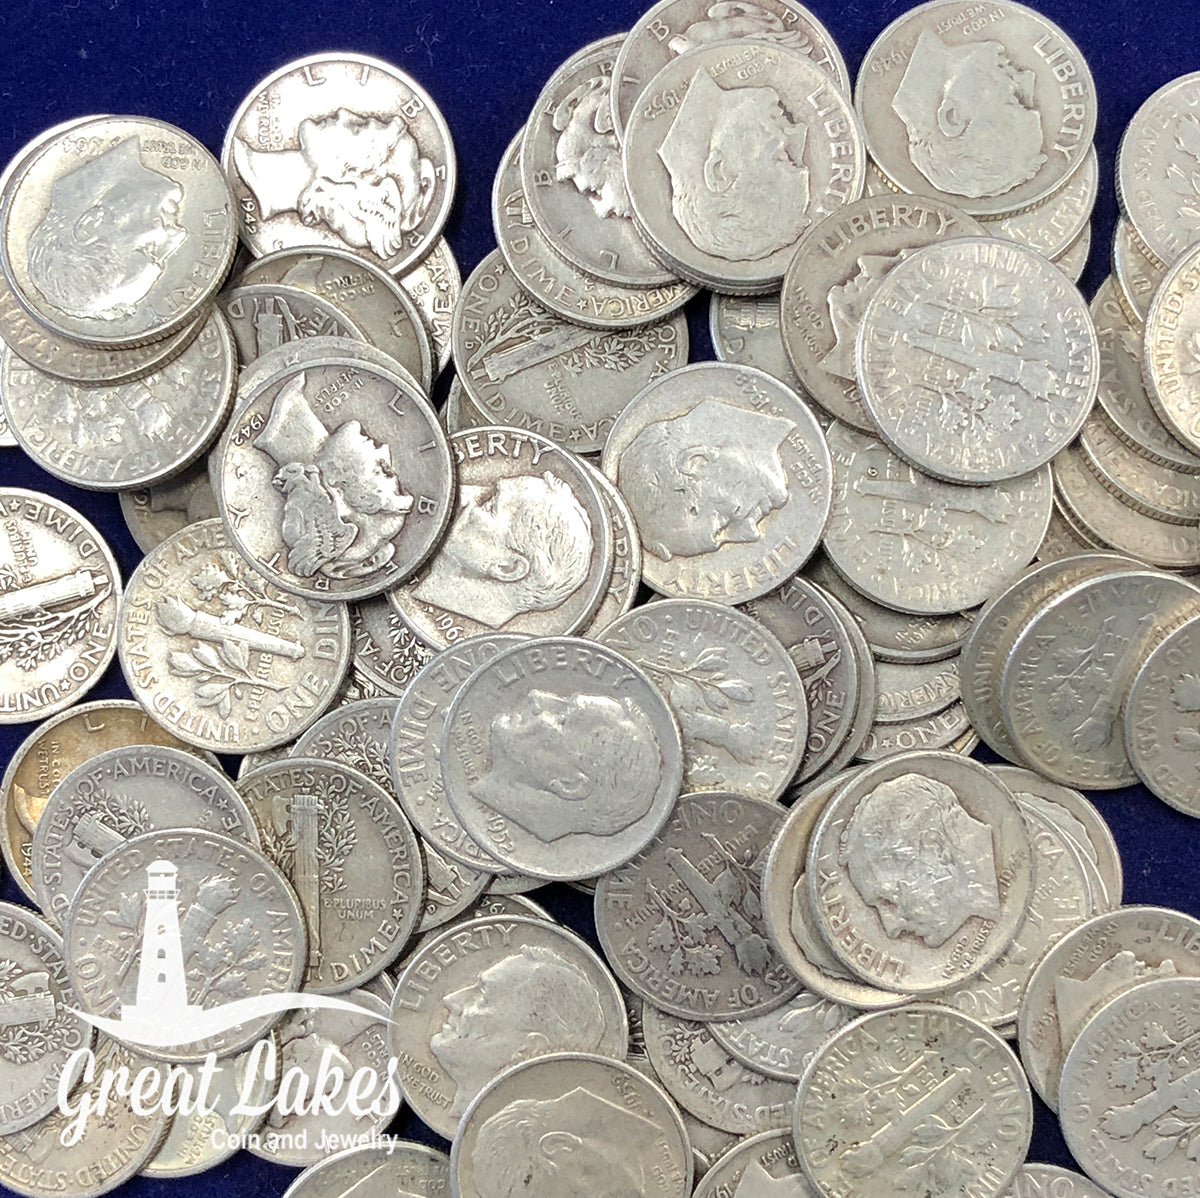 90% Silver Dimes - $10 FV (Roosevelt)